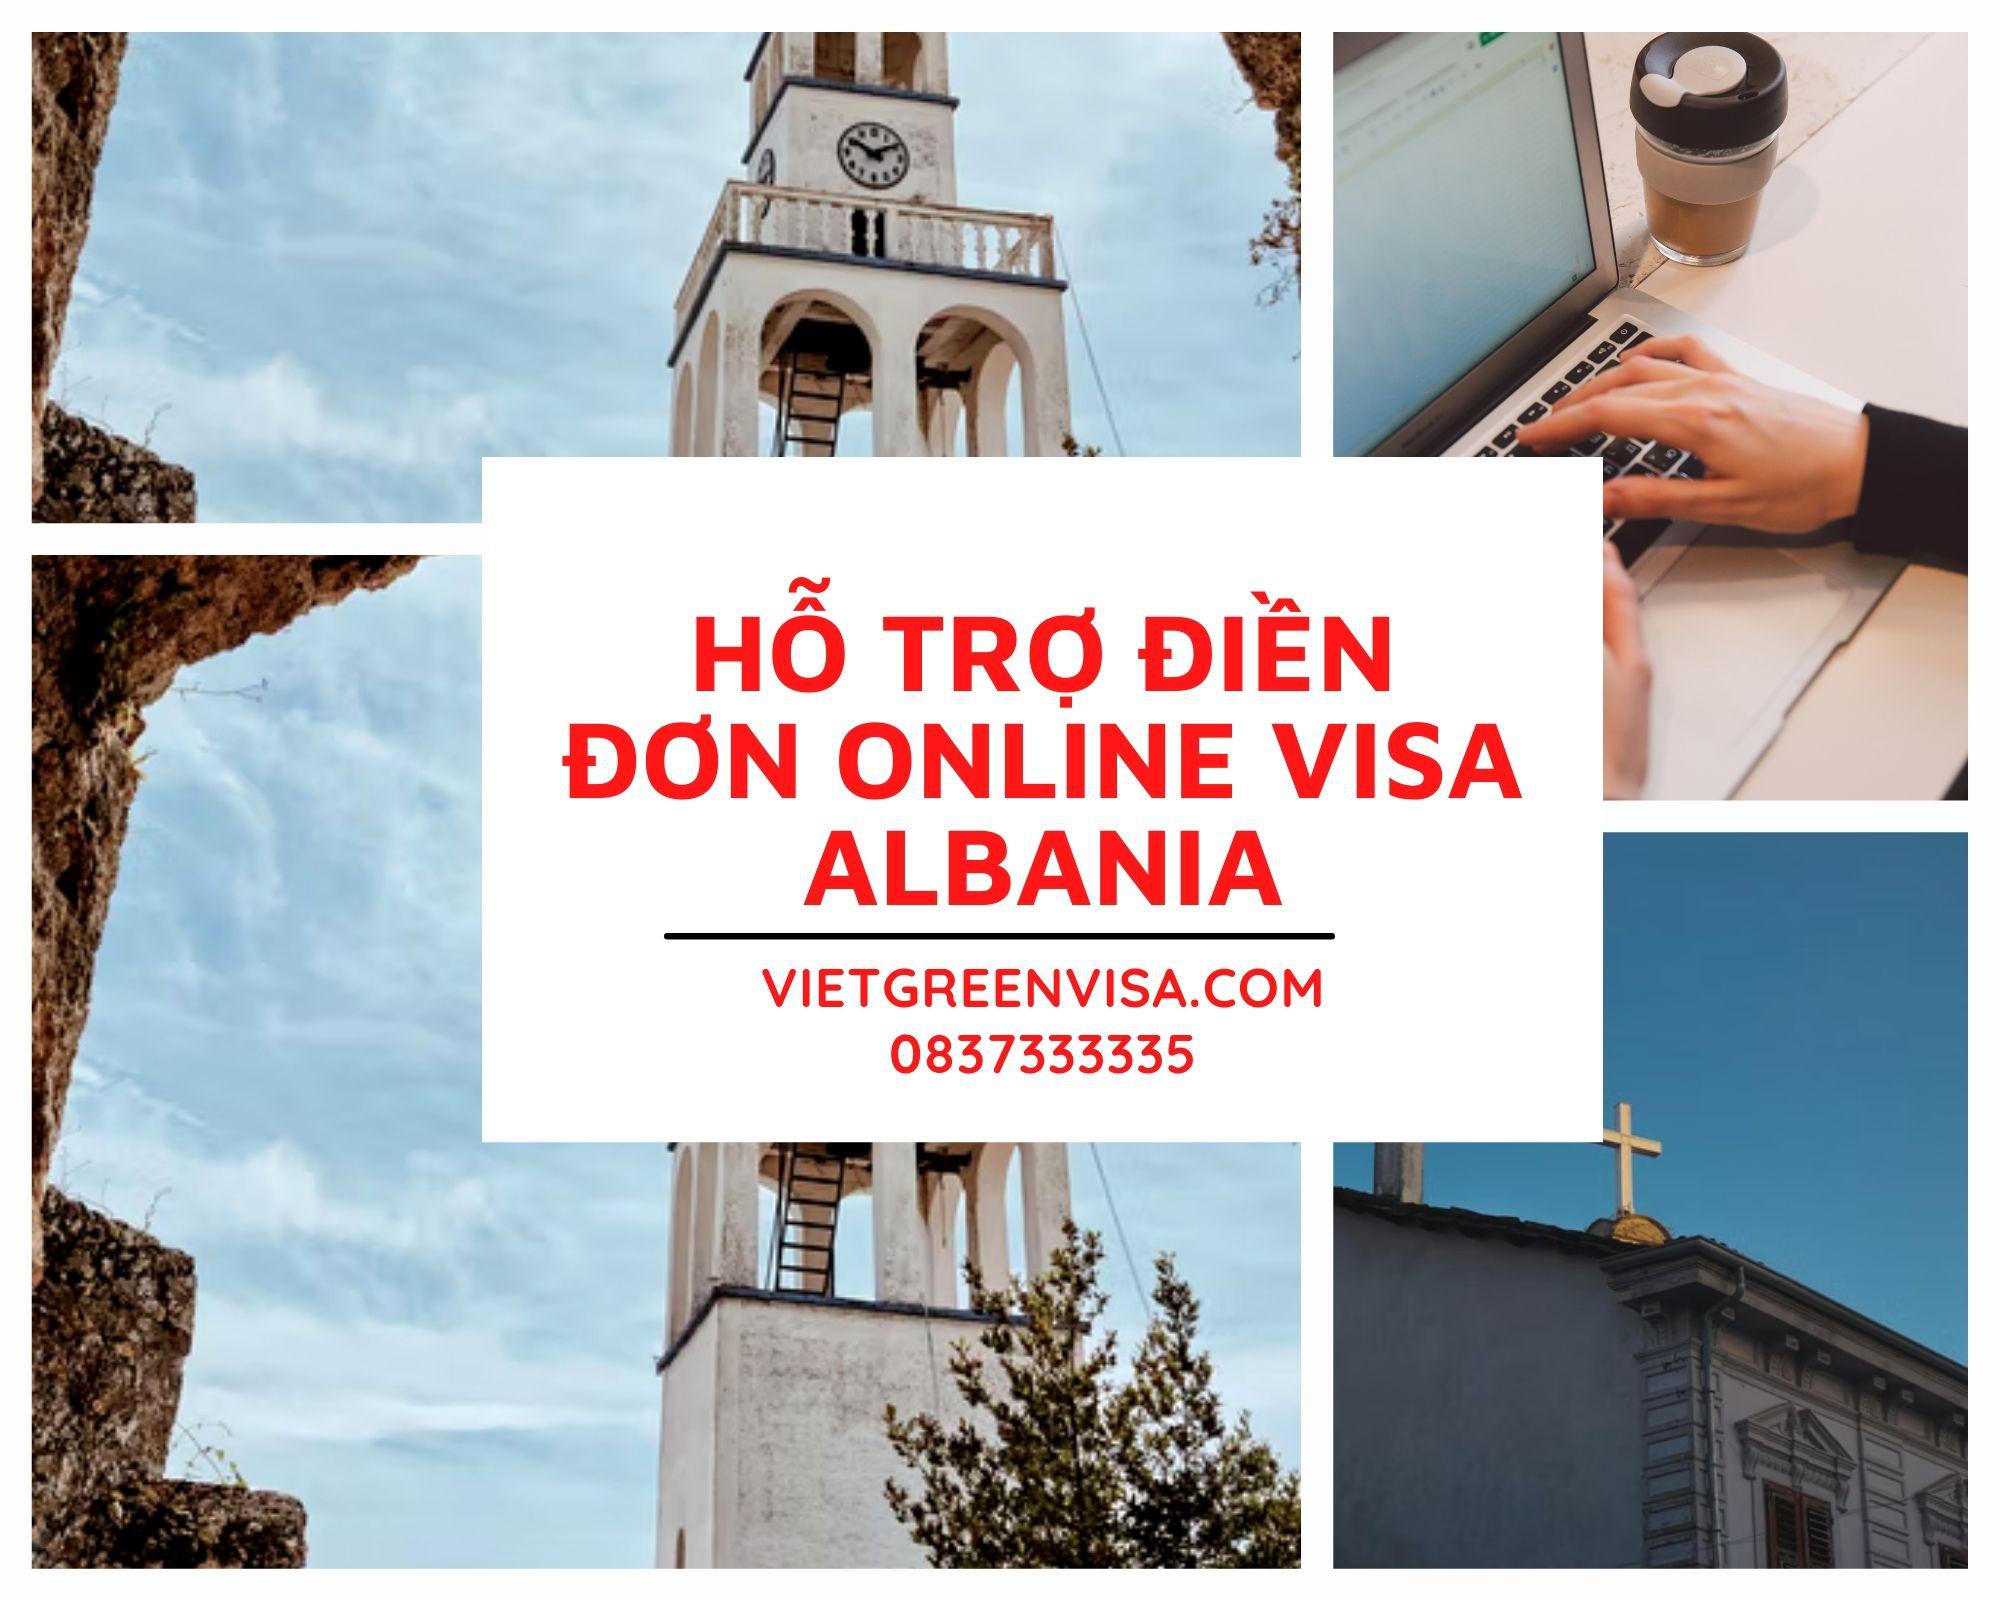 Dịch vụ điền đơn visa Albania online trọn gói